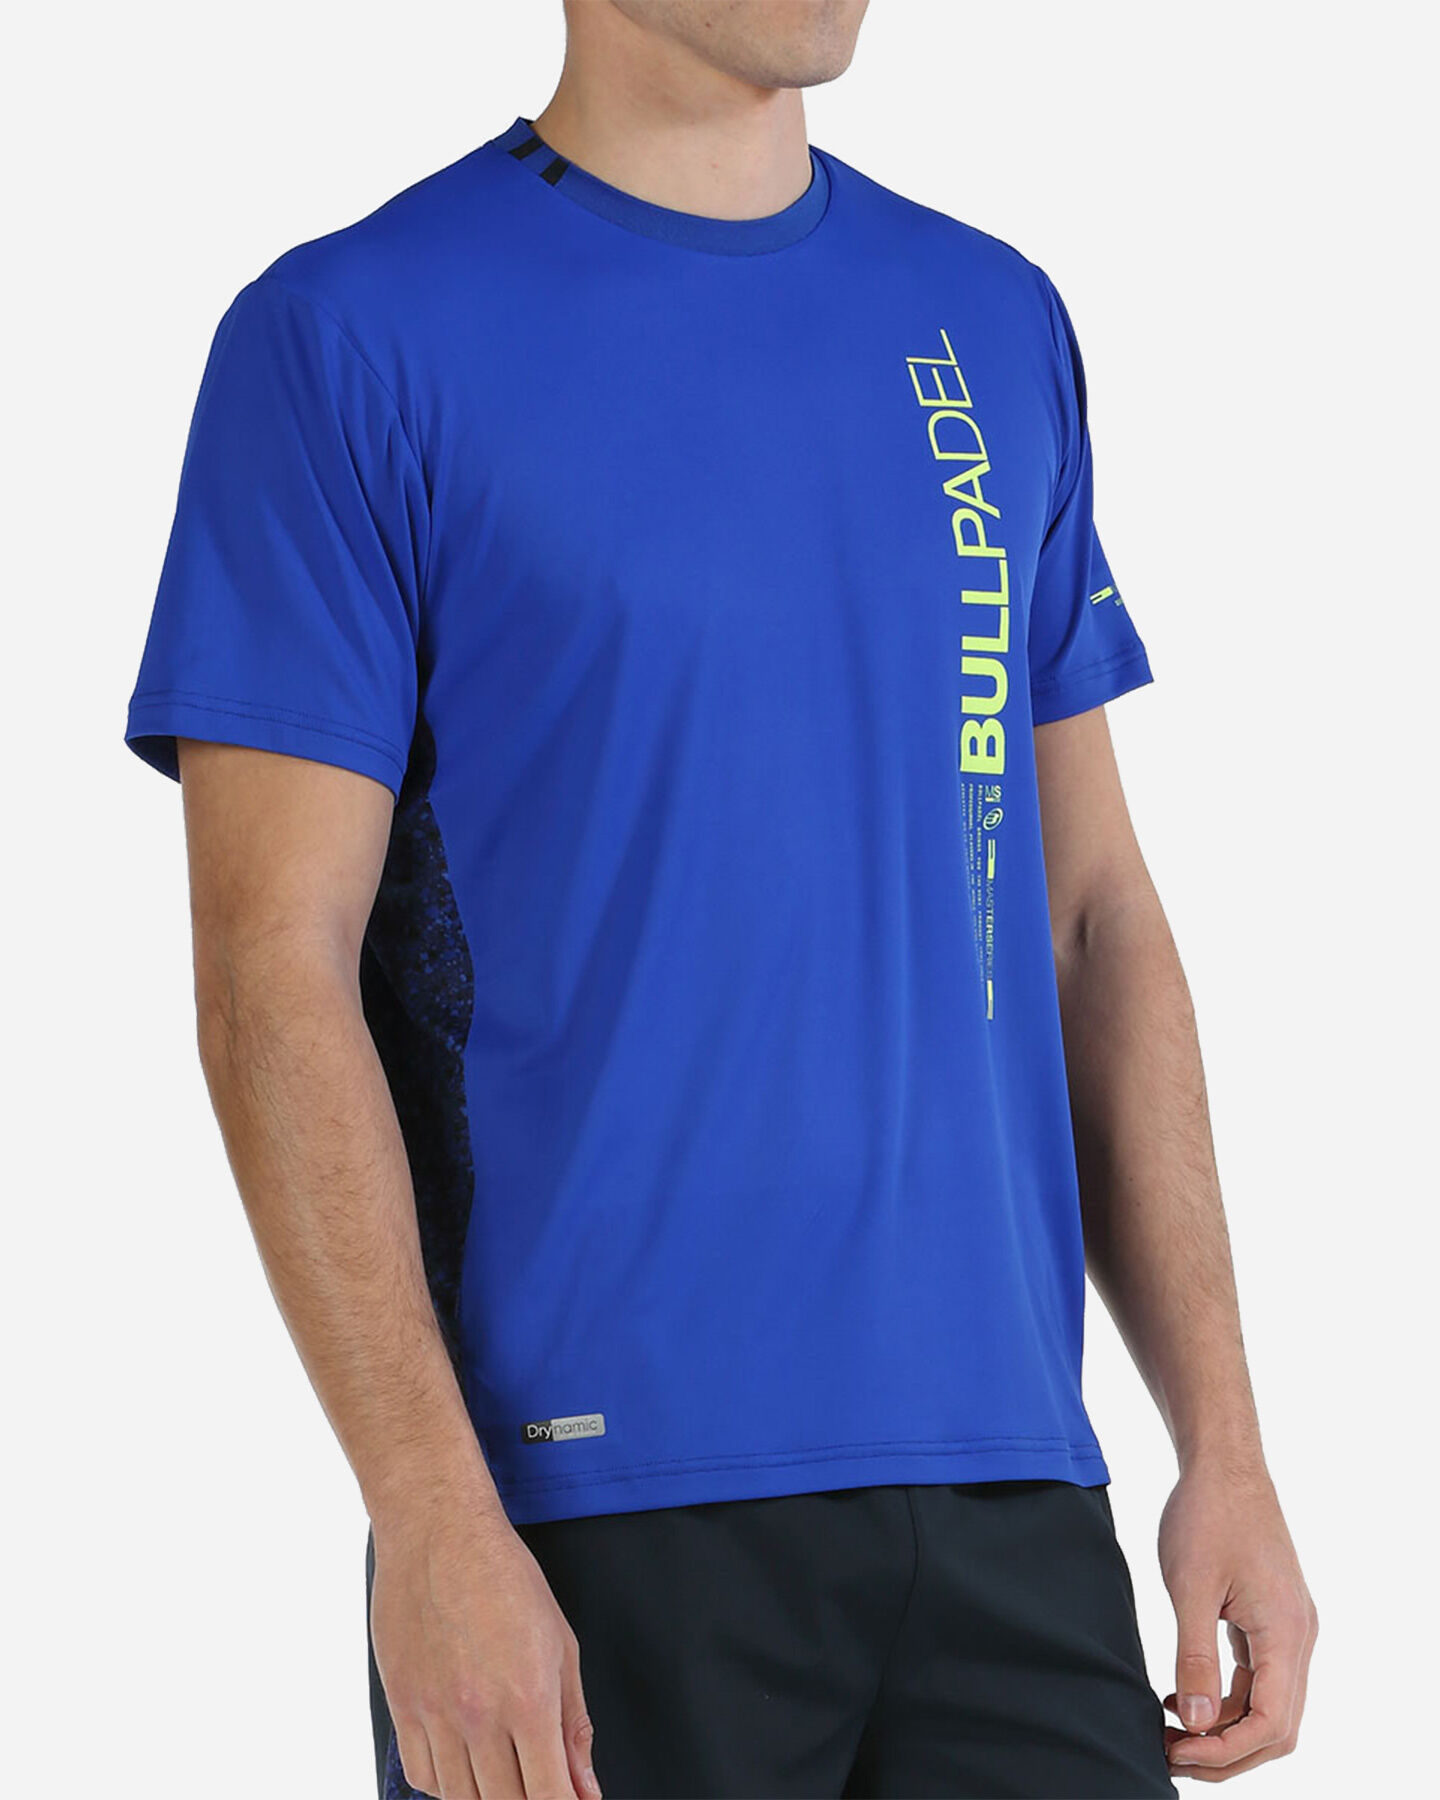  T-Shirt tennis BULLPADEL MIXTA M S5497726|712|S scatto 1